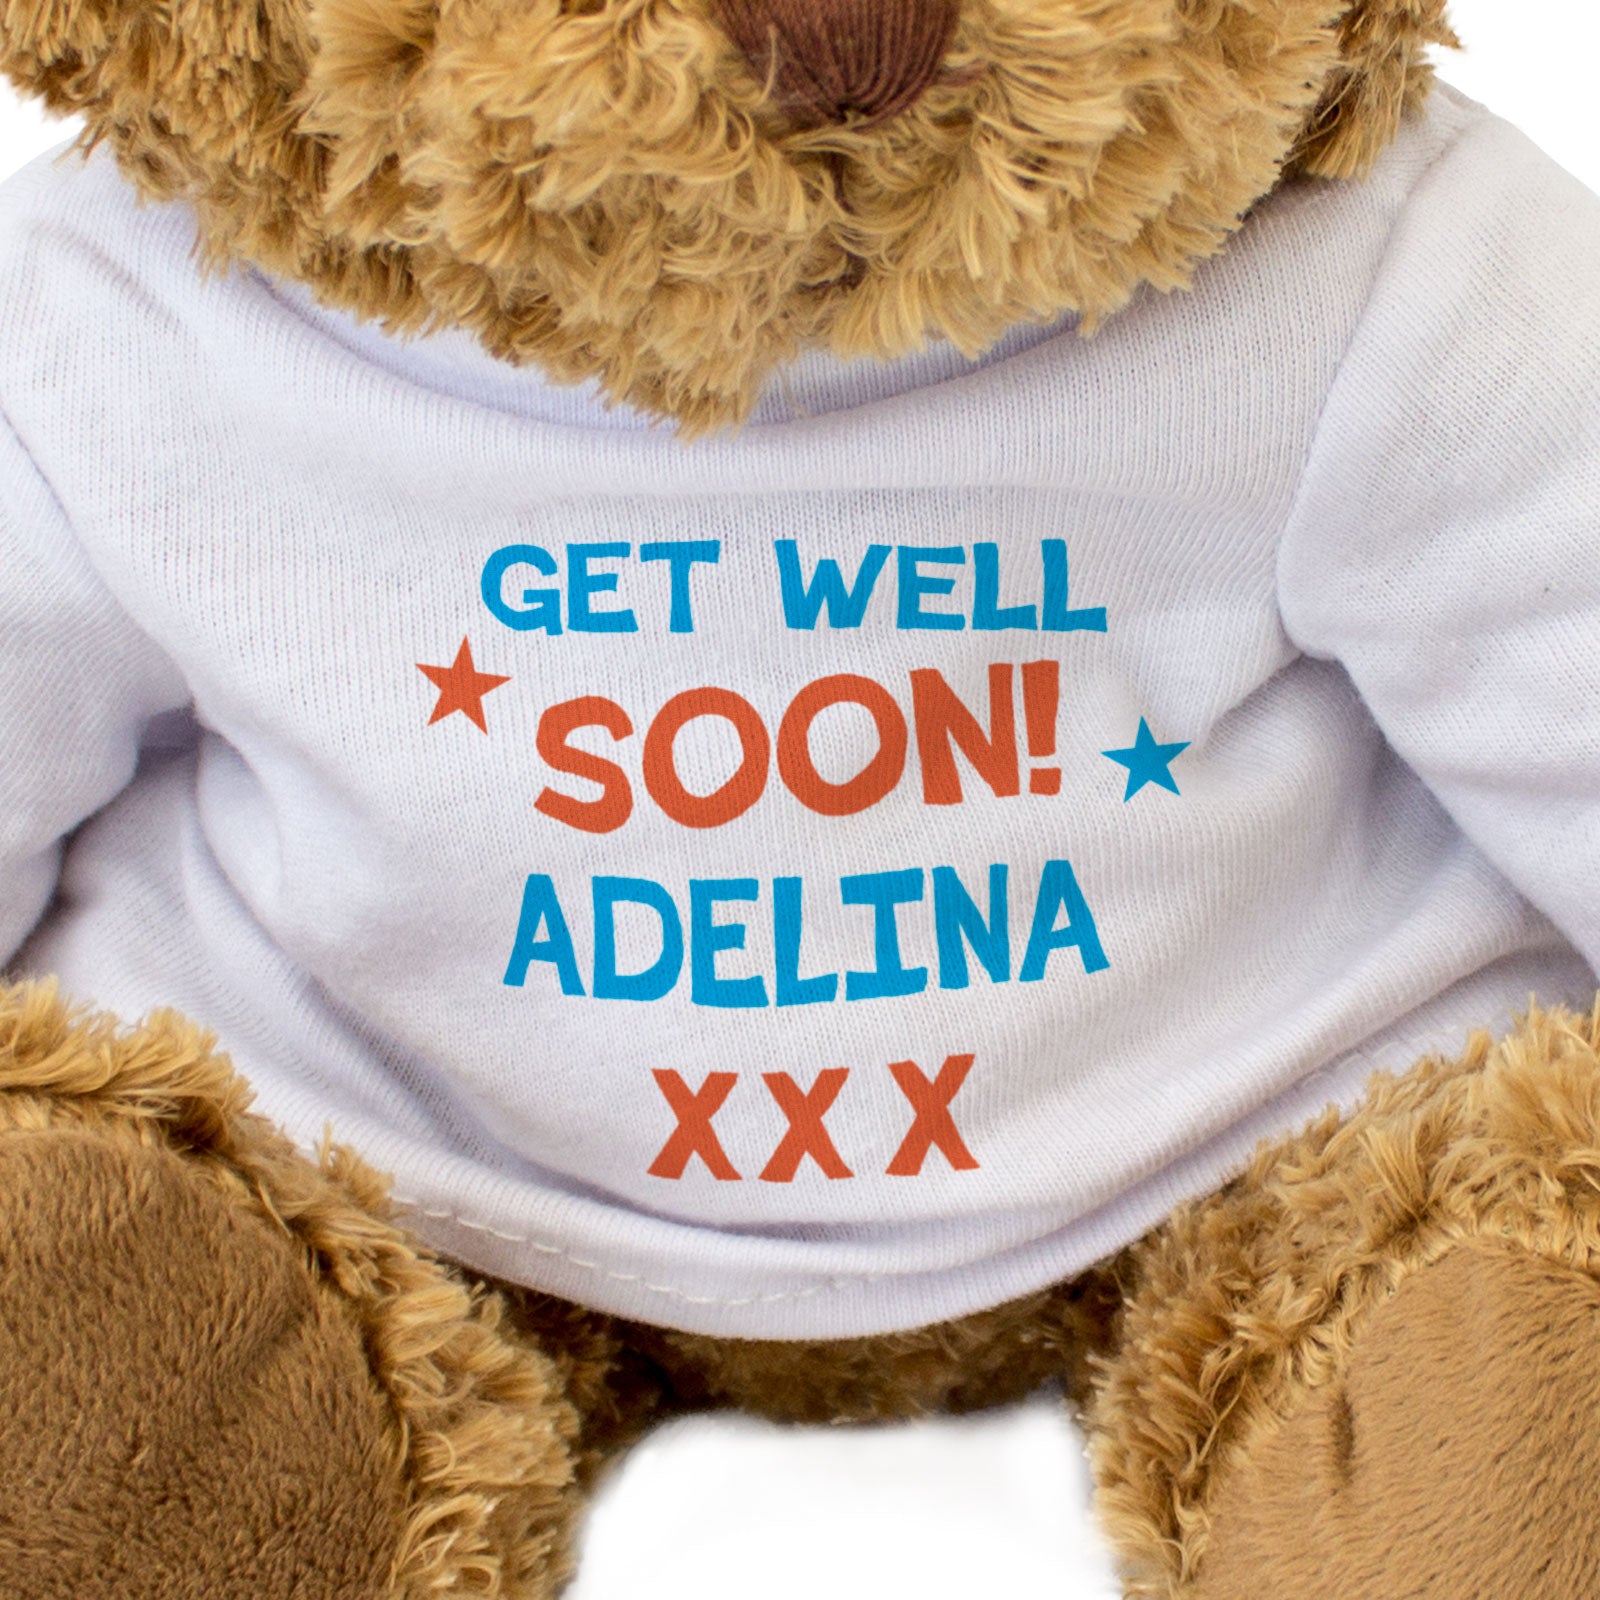 Get Well Soon Adelina - Teddy Bear